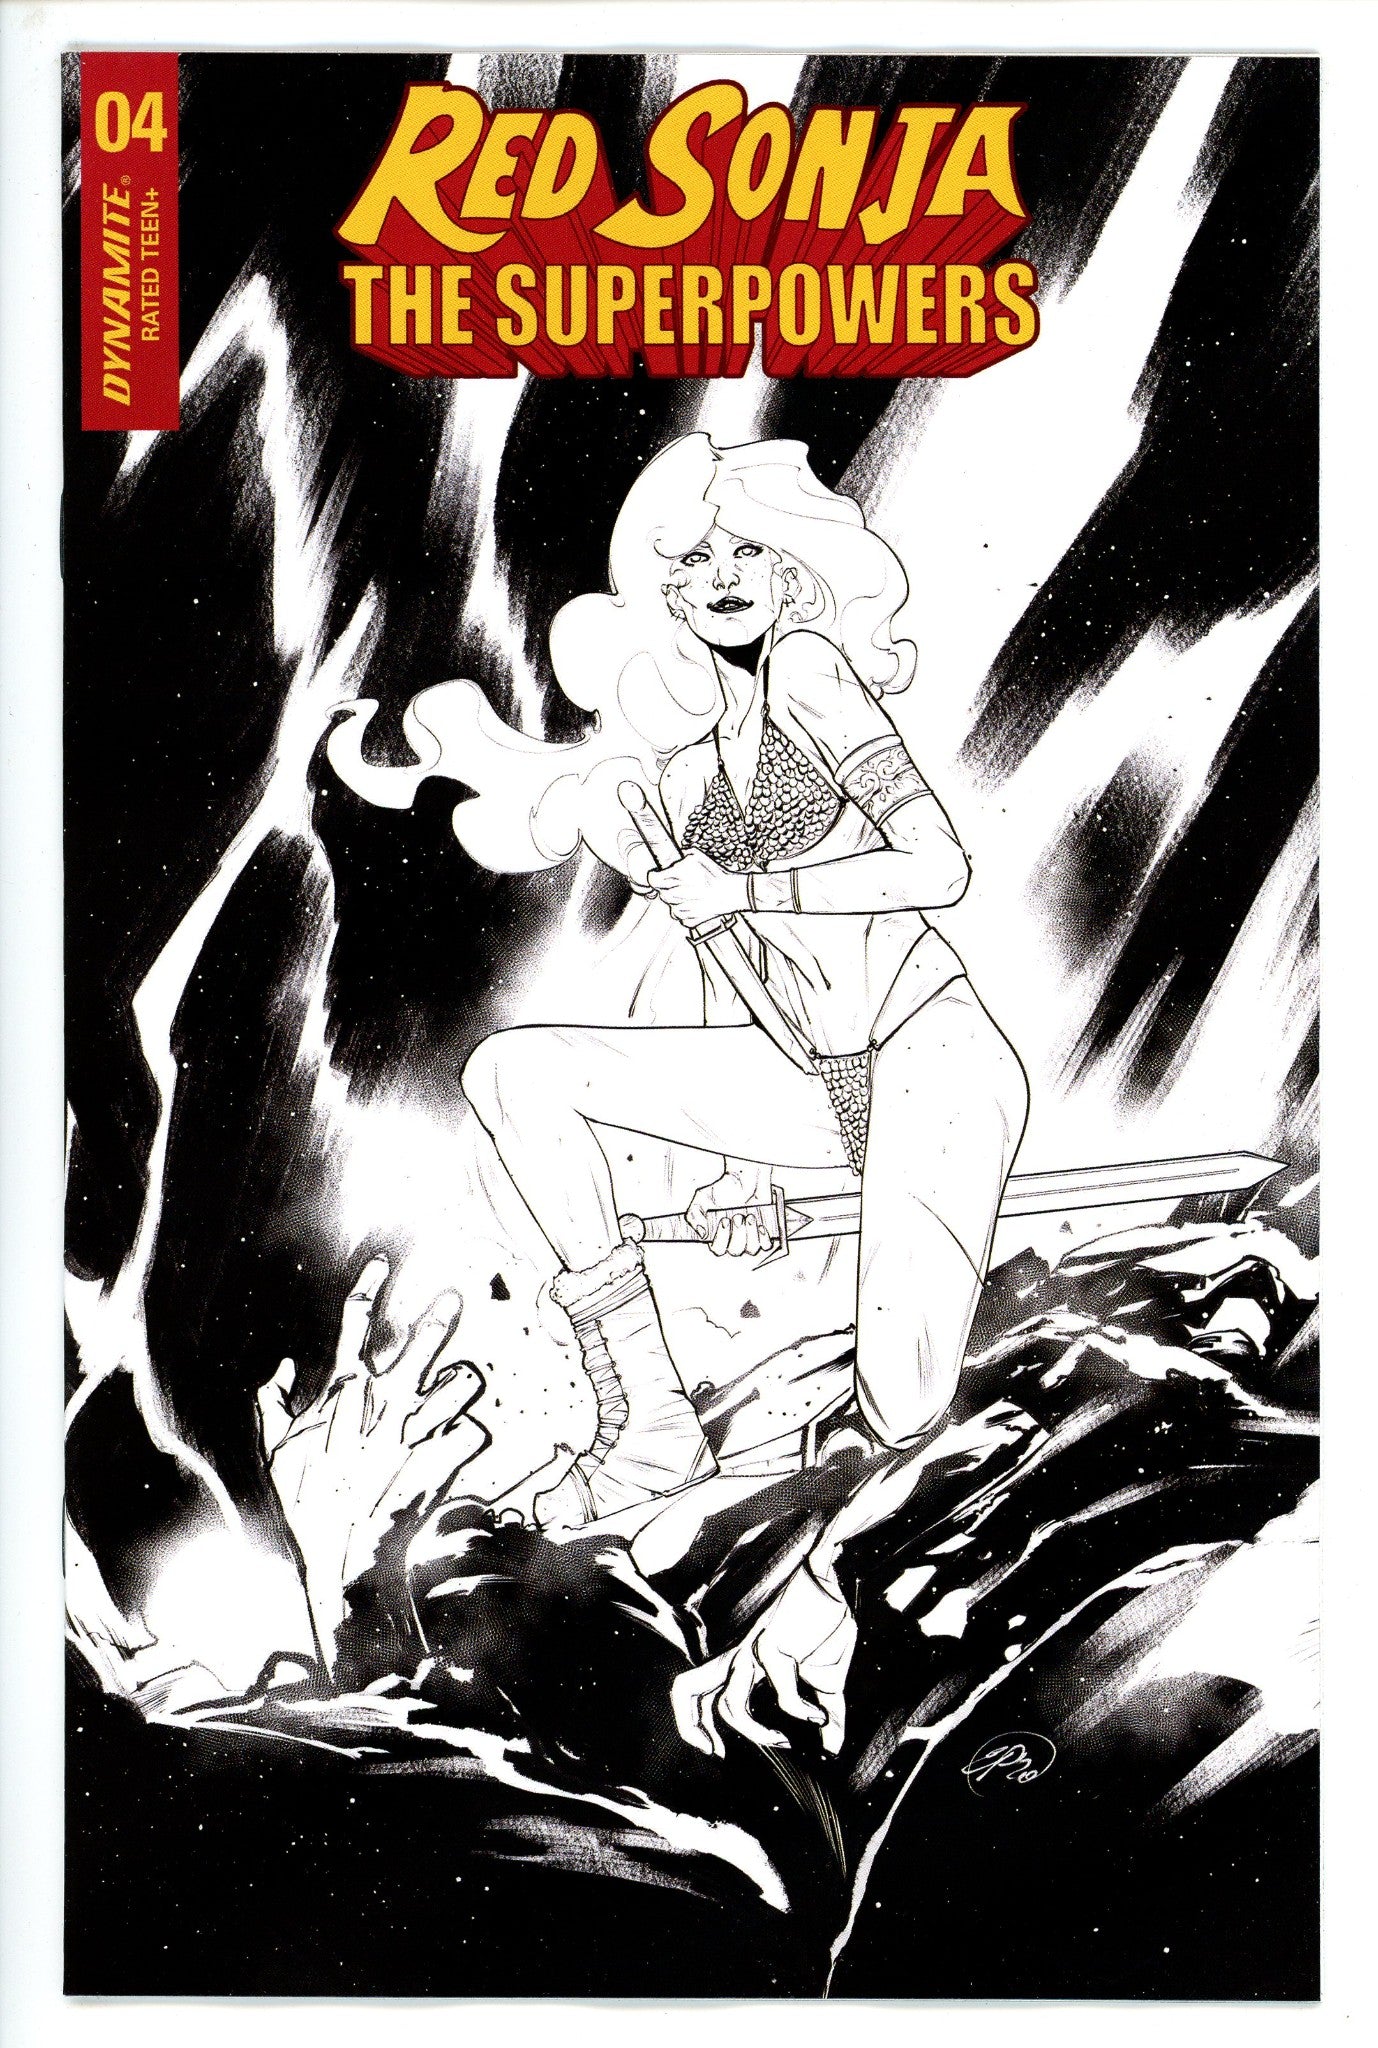 Red Sonja the Superpowers 4 Pinna Variant-CaptCan Comics Inc-CaptCan Comics Inc